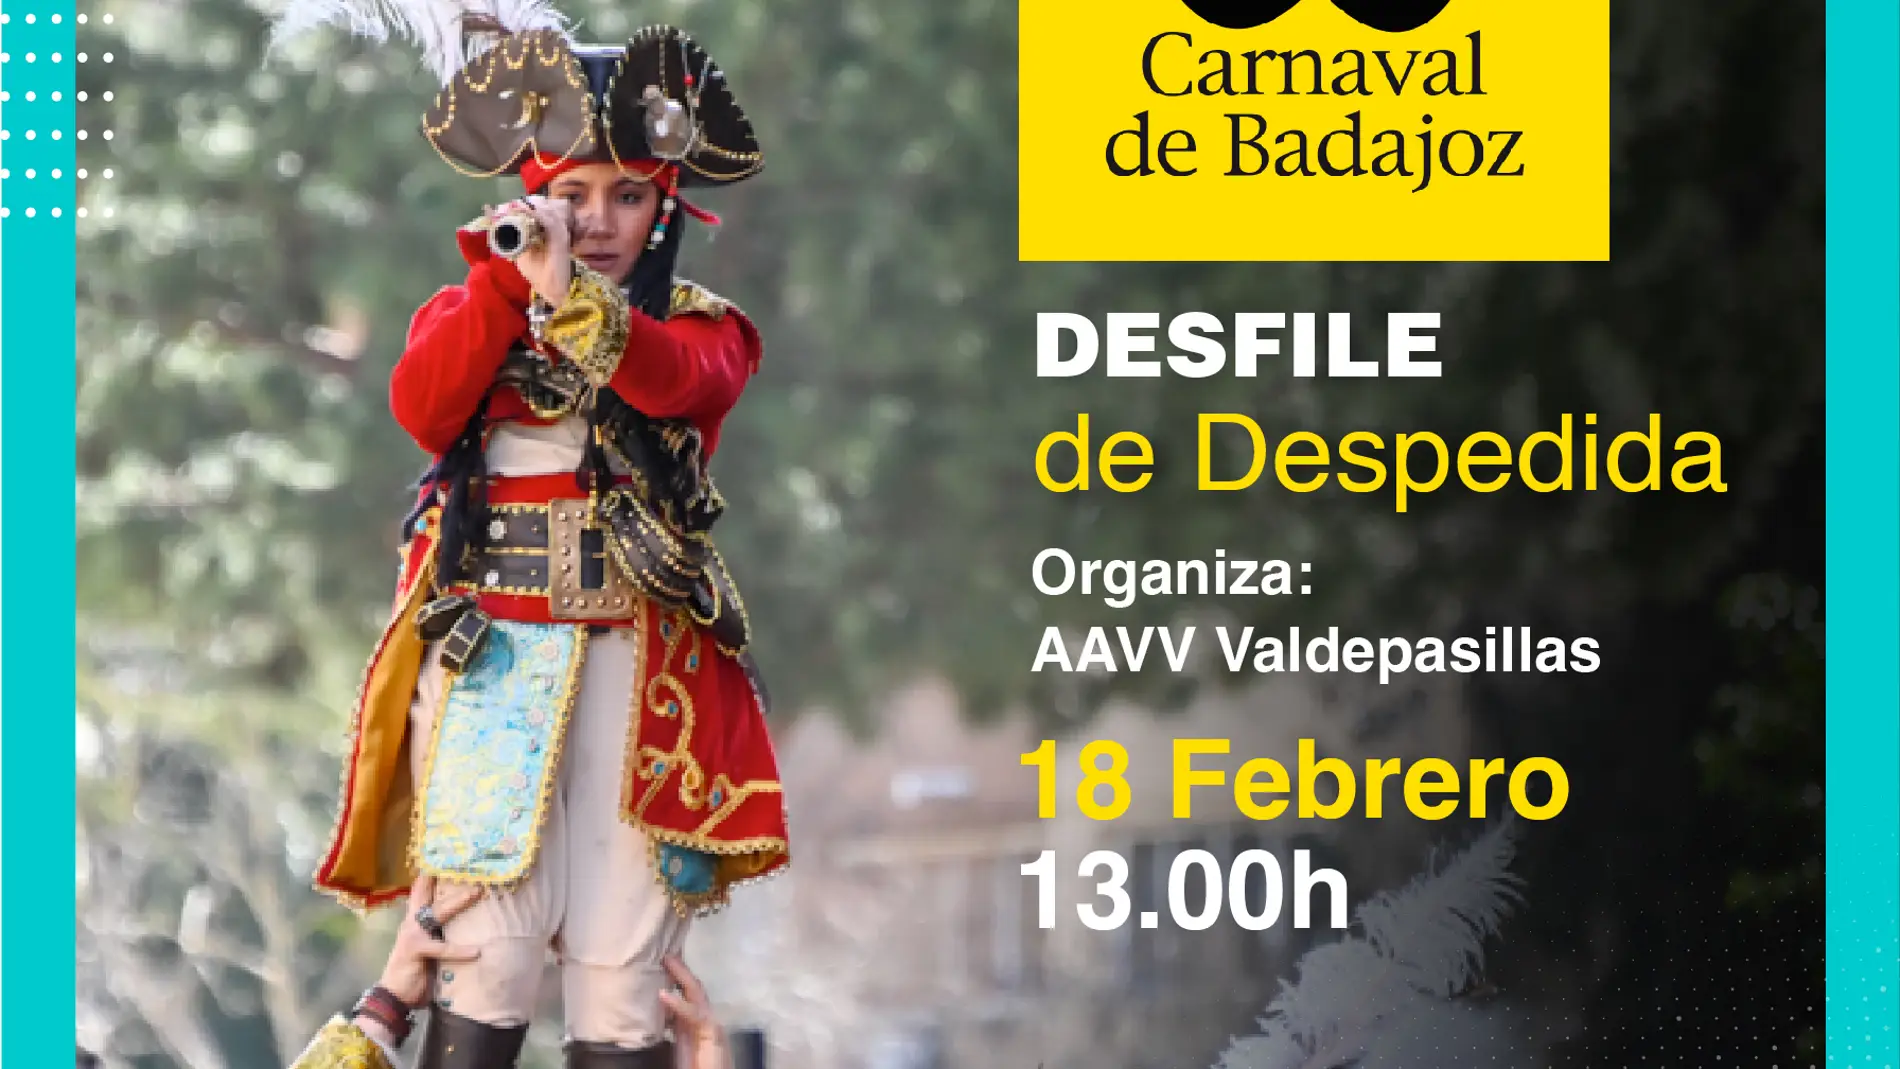 Varias calles de Badajoz presentarán este fin de semana cortes de tráfico con motivo del Carnaval